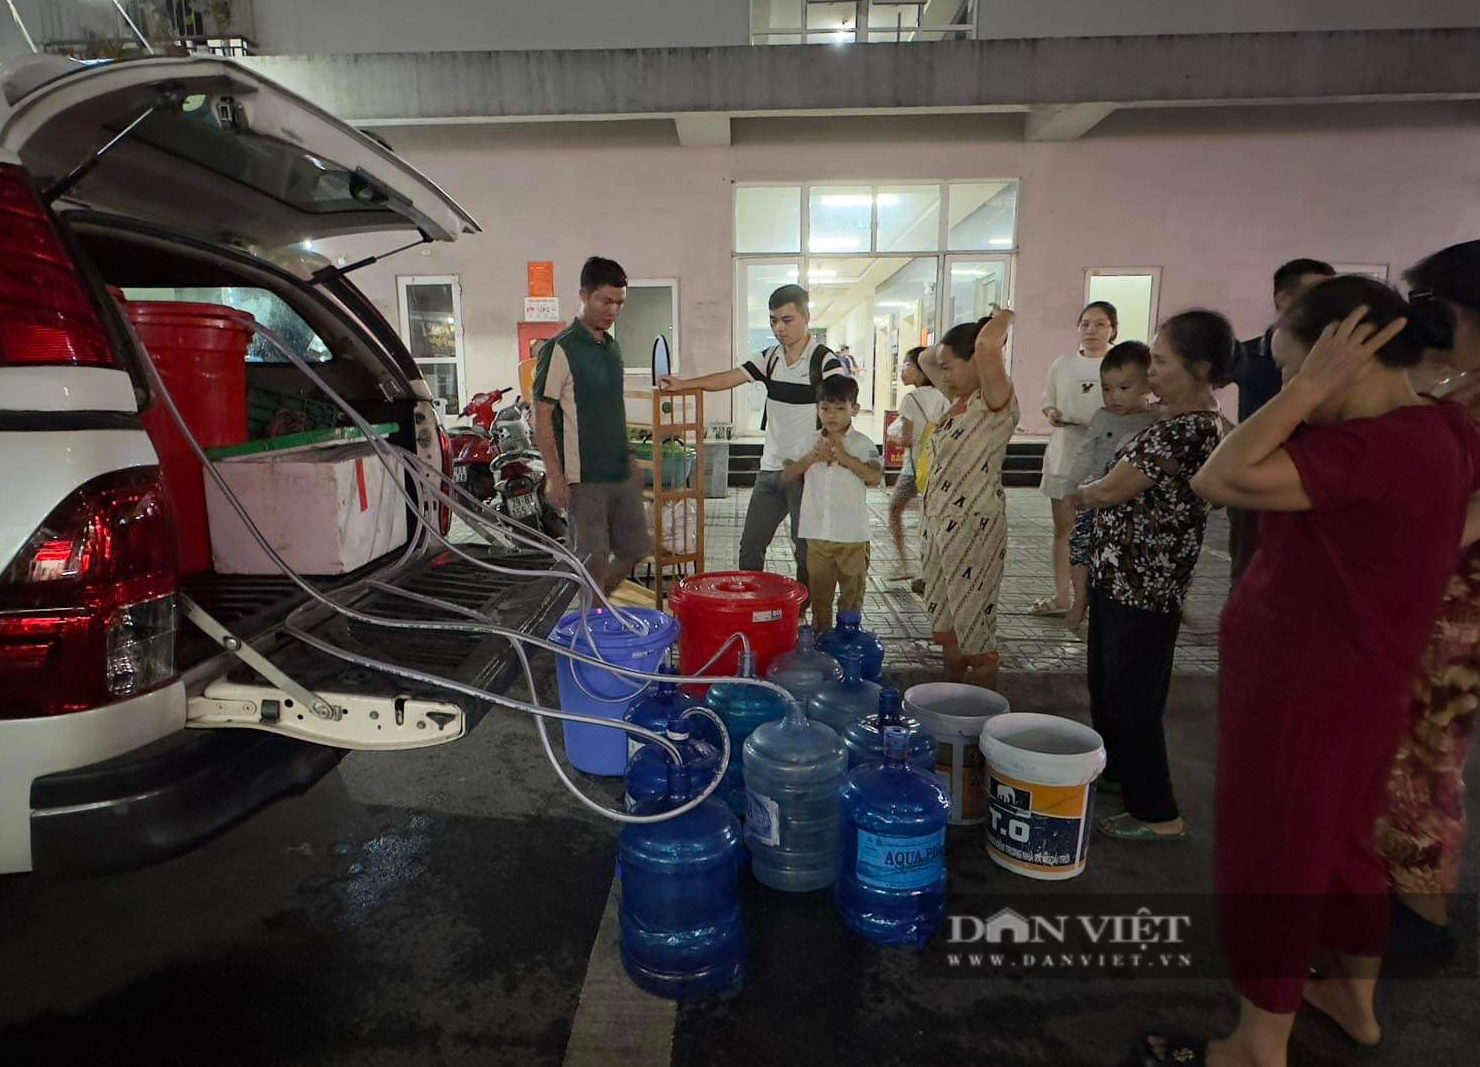 Mệt mỏi khi nhiều đêm xếp hàng chờ nước sạch, hàng nghìn người dân KĐT Thanh Hà viết đơn kêu cứu  - Ảnh 3.